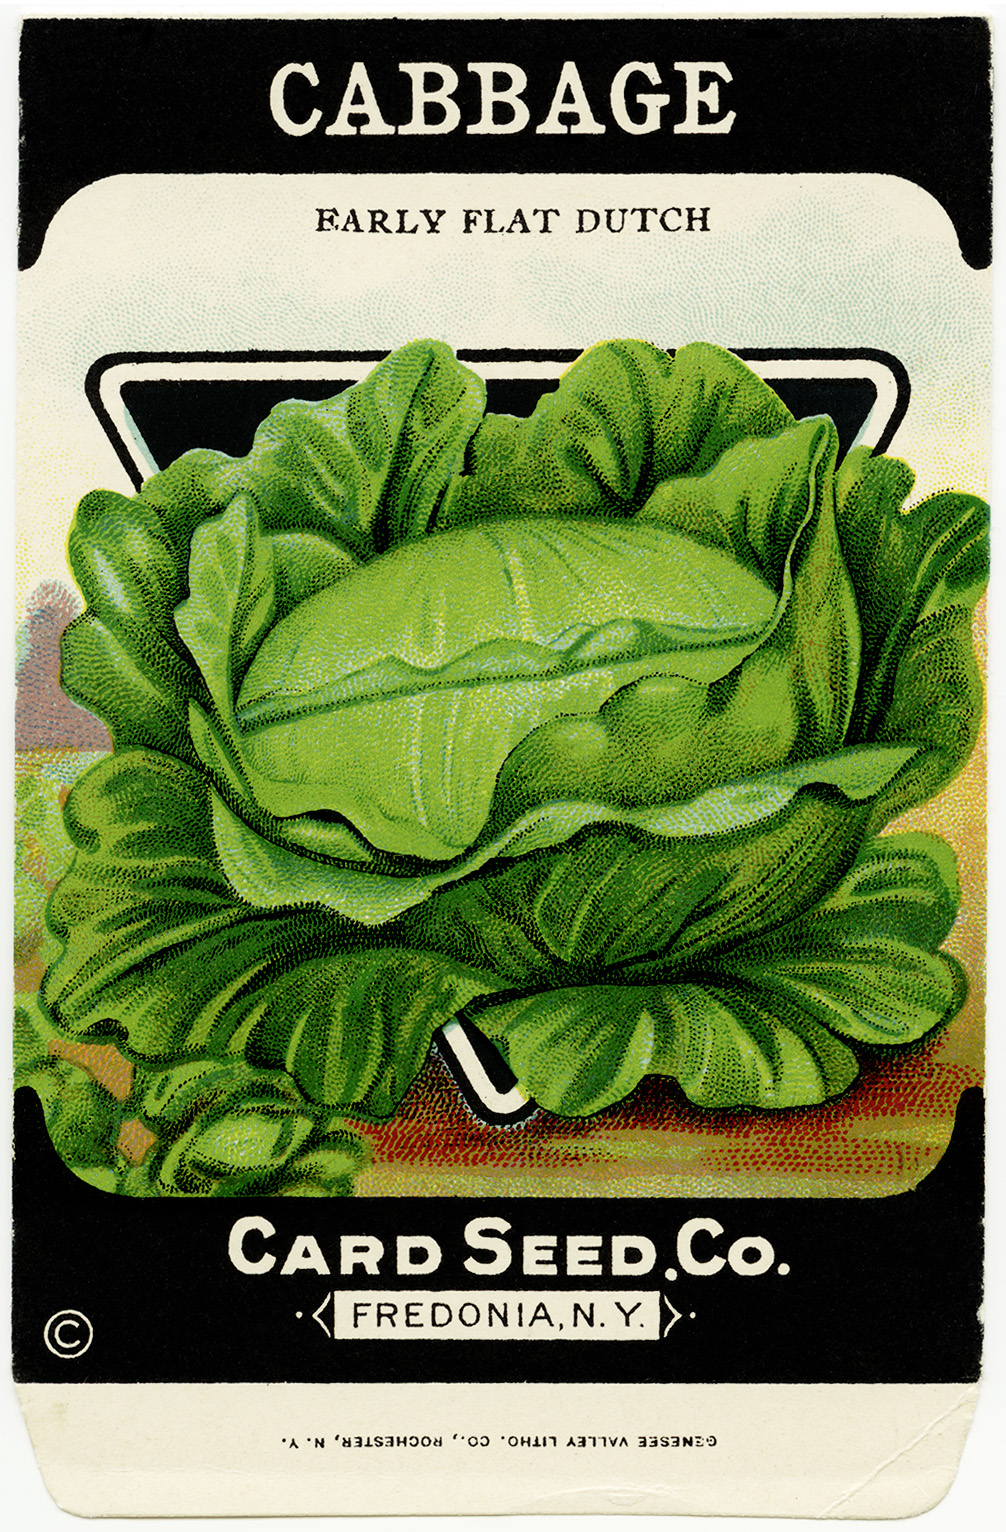 5 Best Images of Vintage Vegetable Seed Packet Printable Vintage